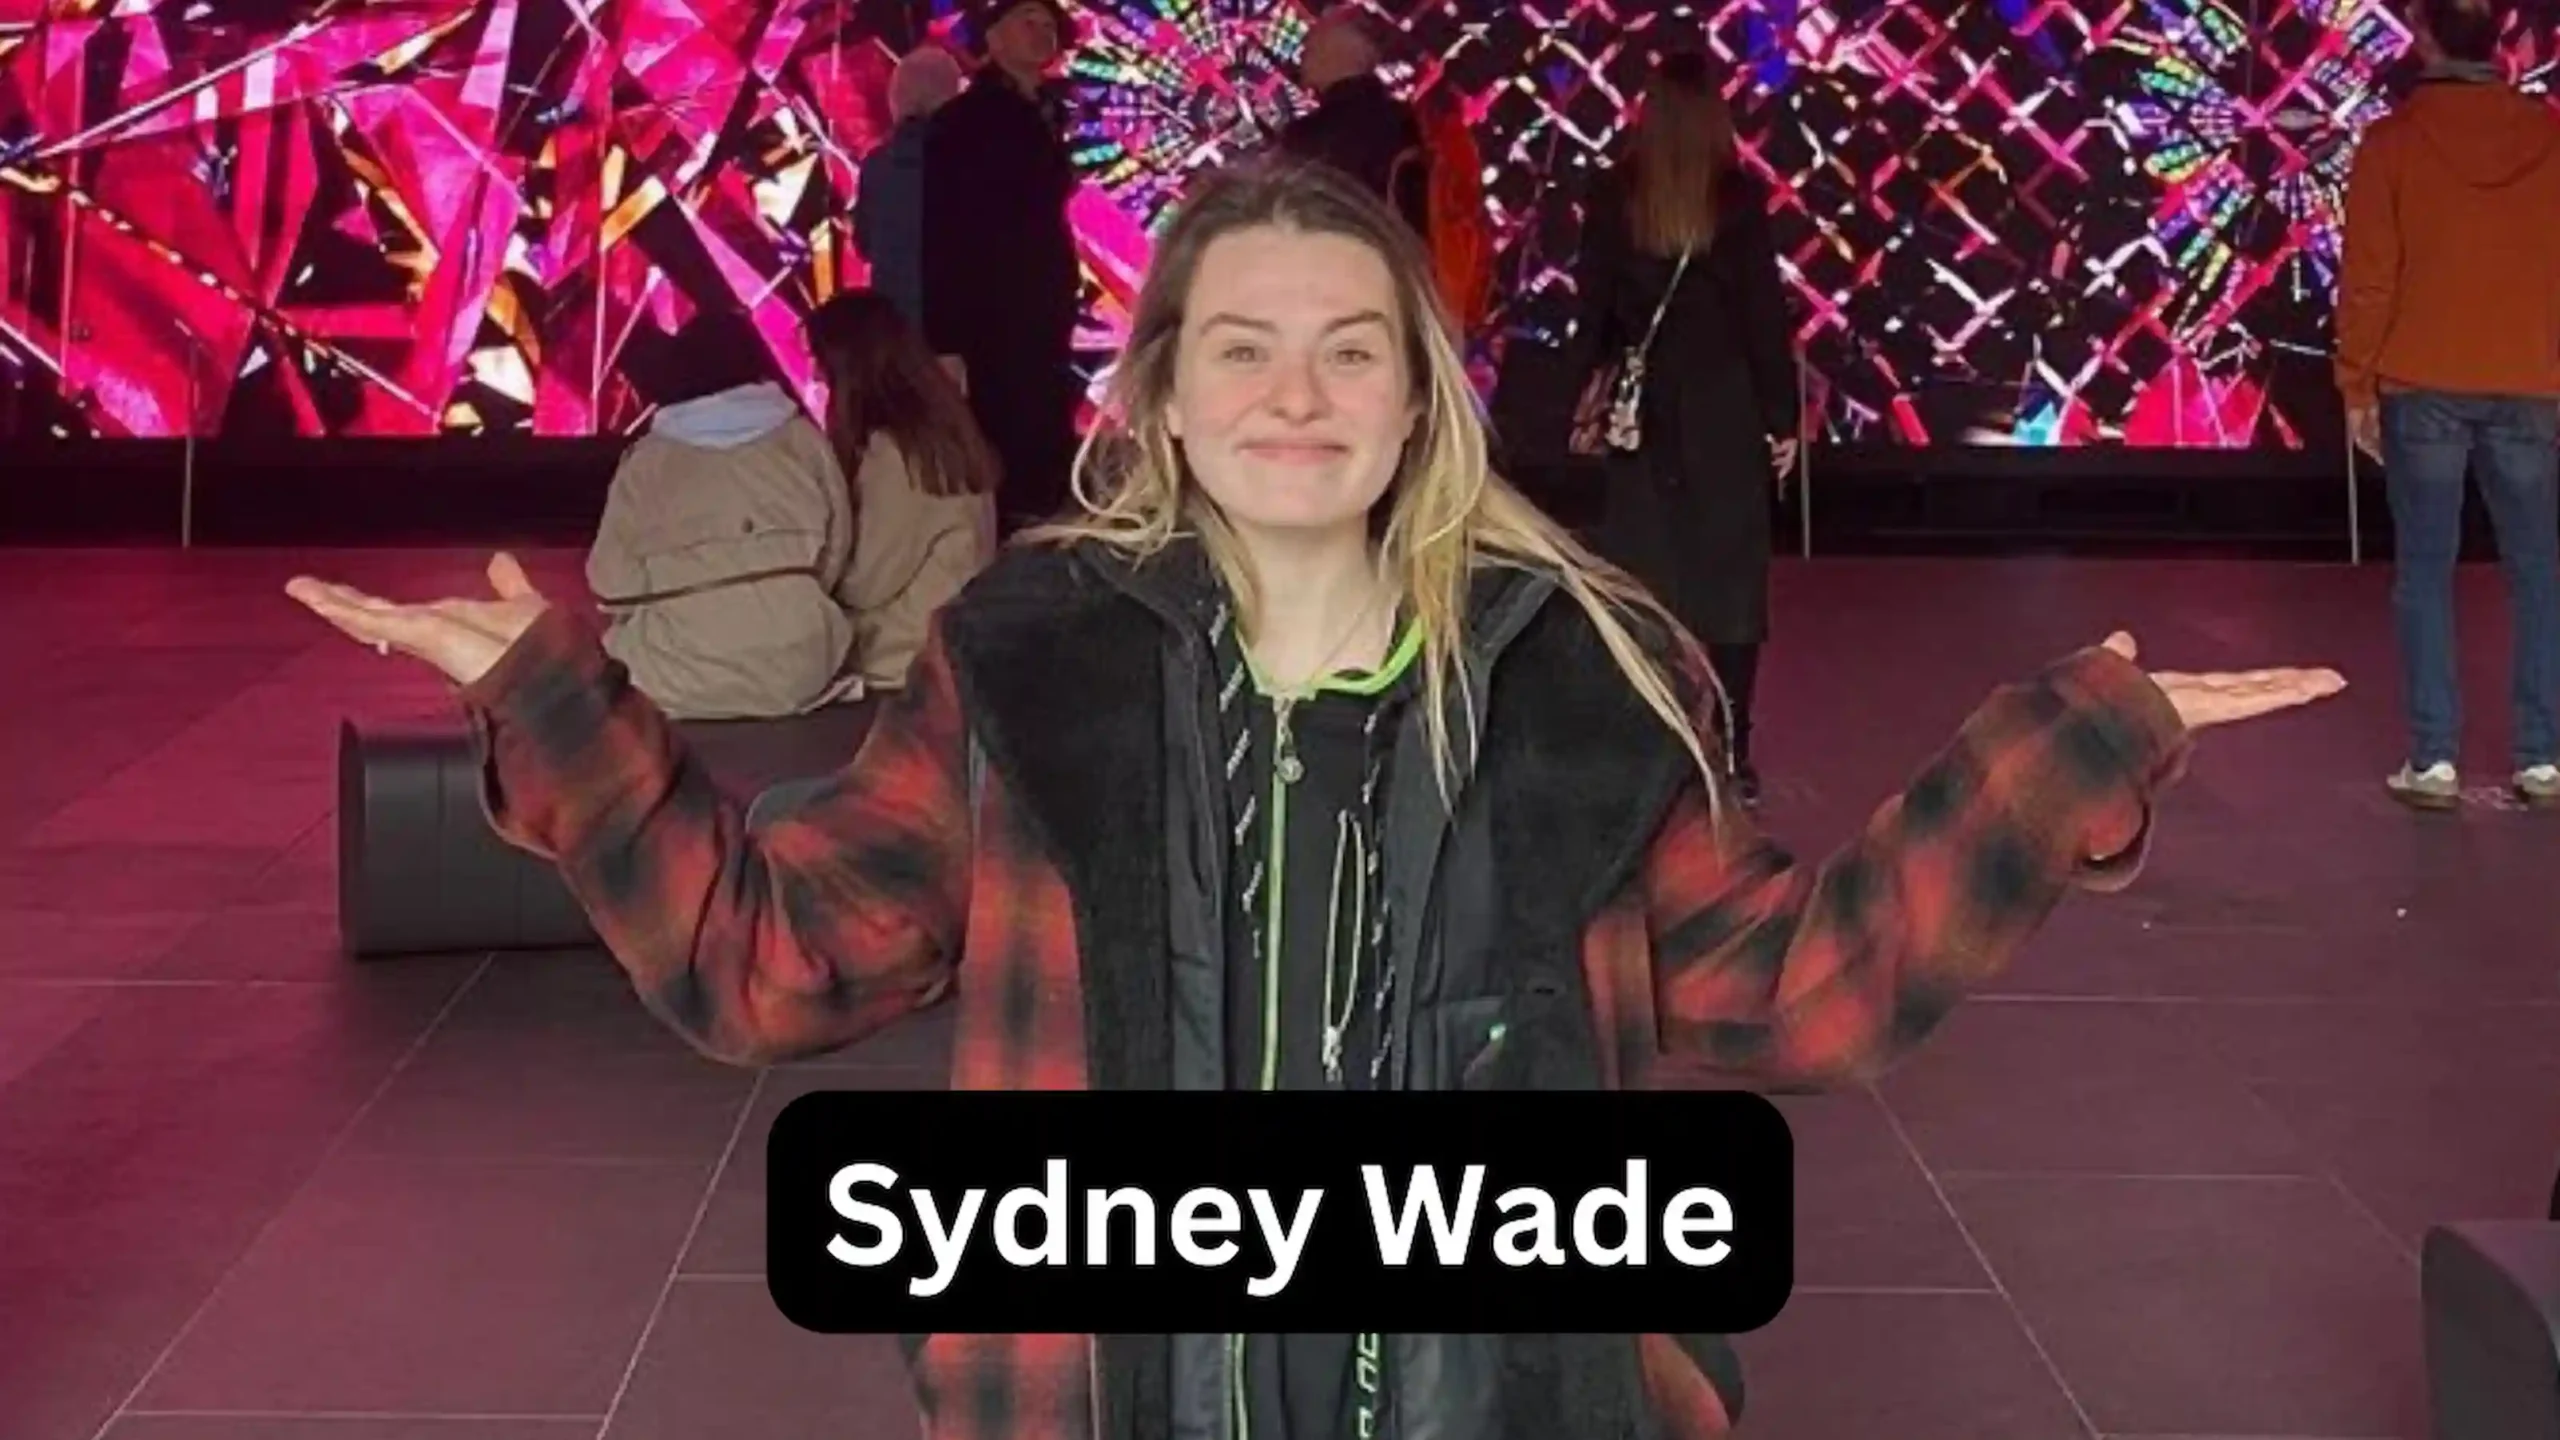 Sydney Wade Biography